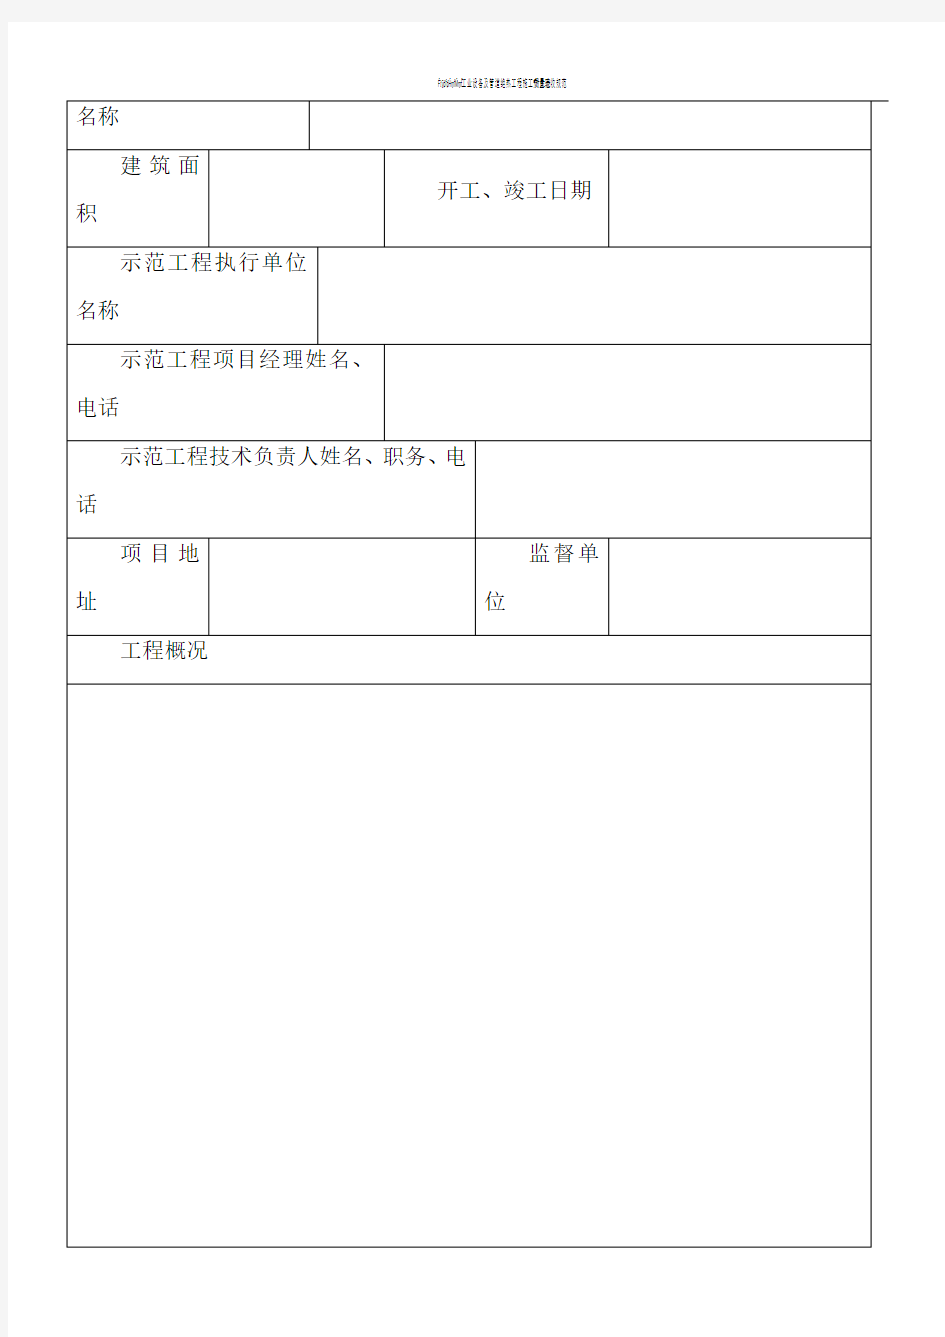 河南省绿色施工示范工程申报表